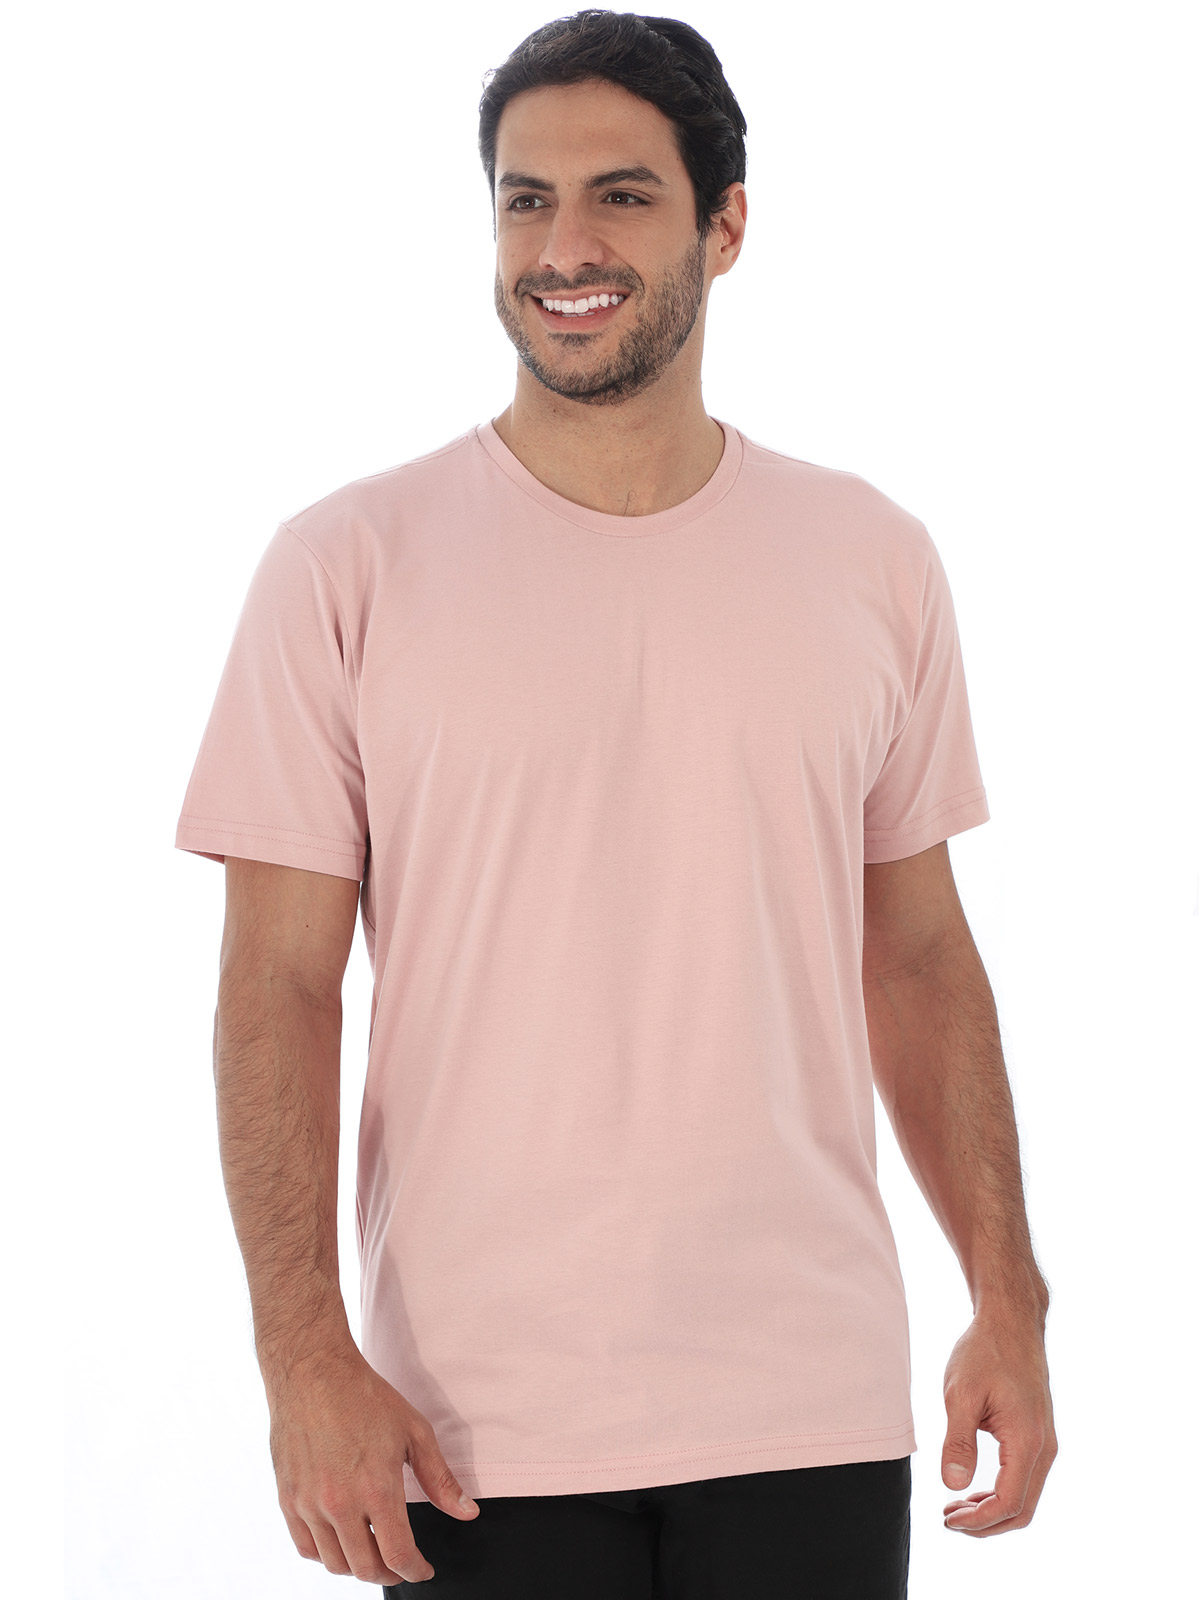 Camiseta Masculina Algodão Manga Curta Básica Rosa